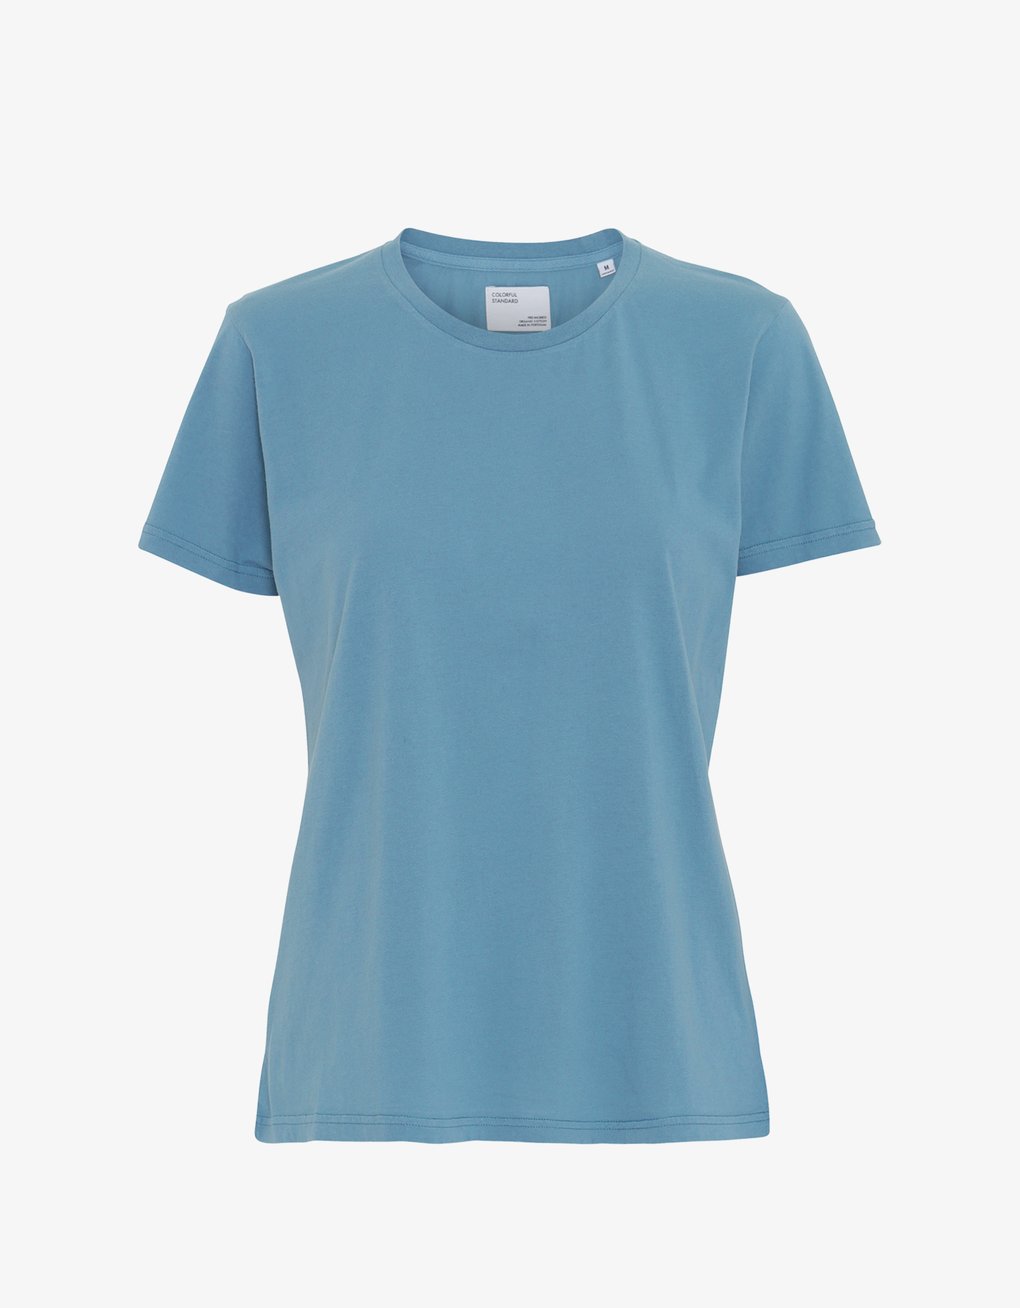 Camiseta Ligera de Mujer Orgánica Azul Piedra - ECRU